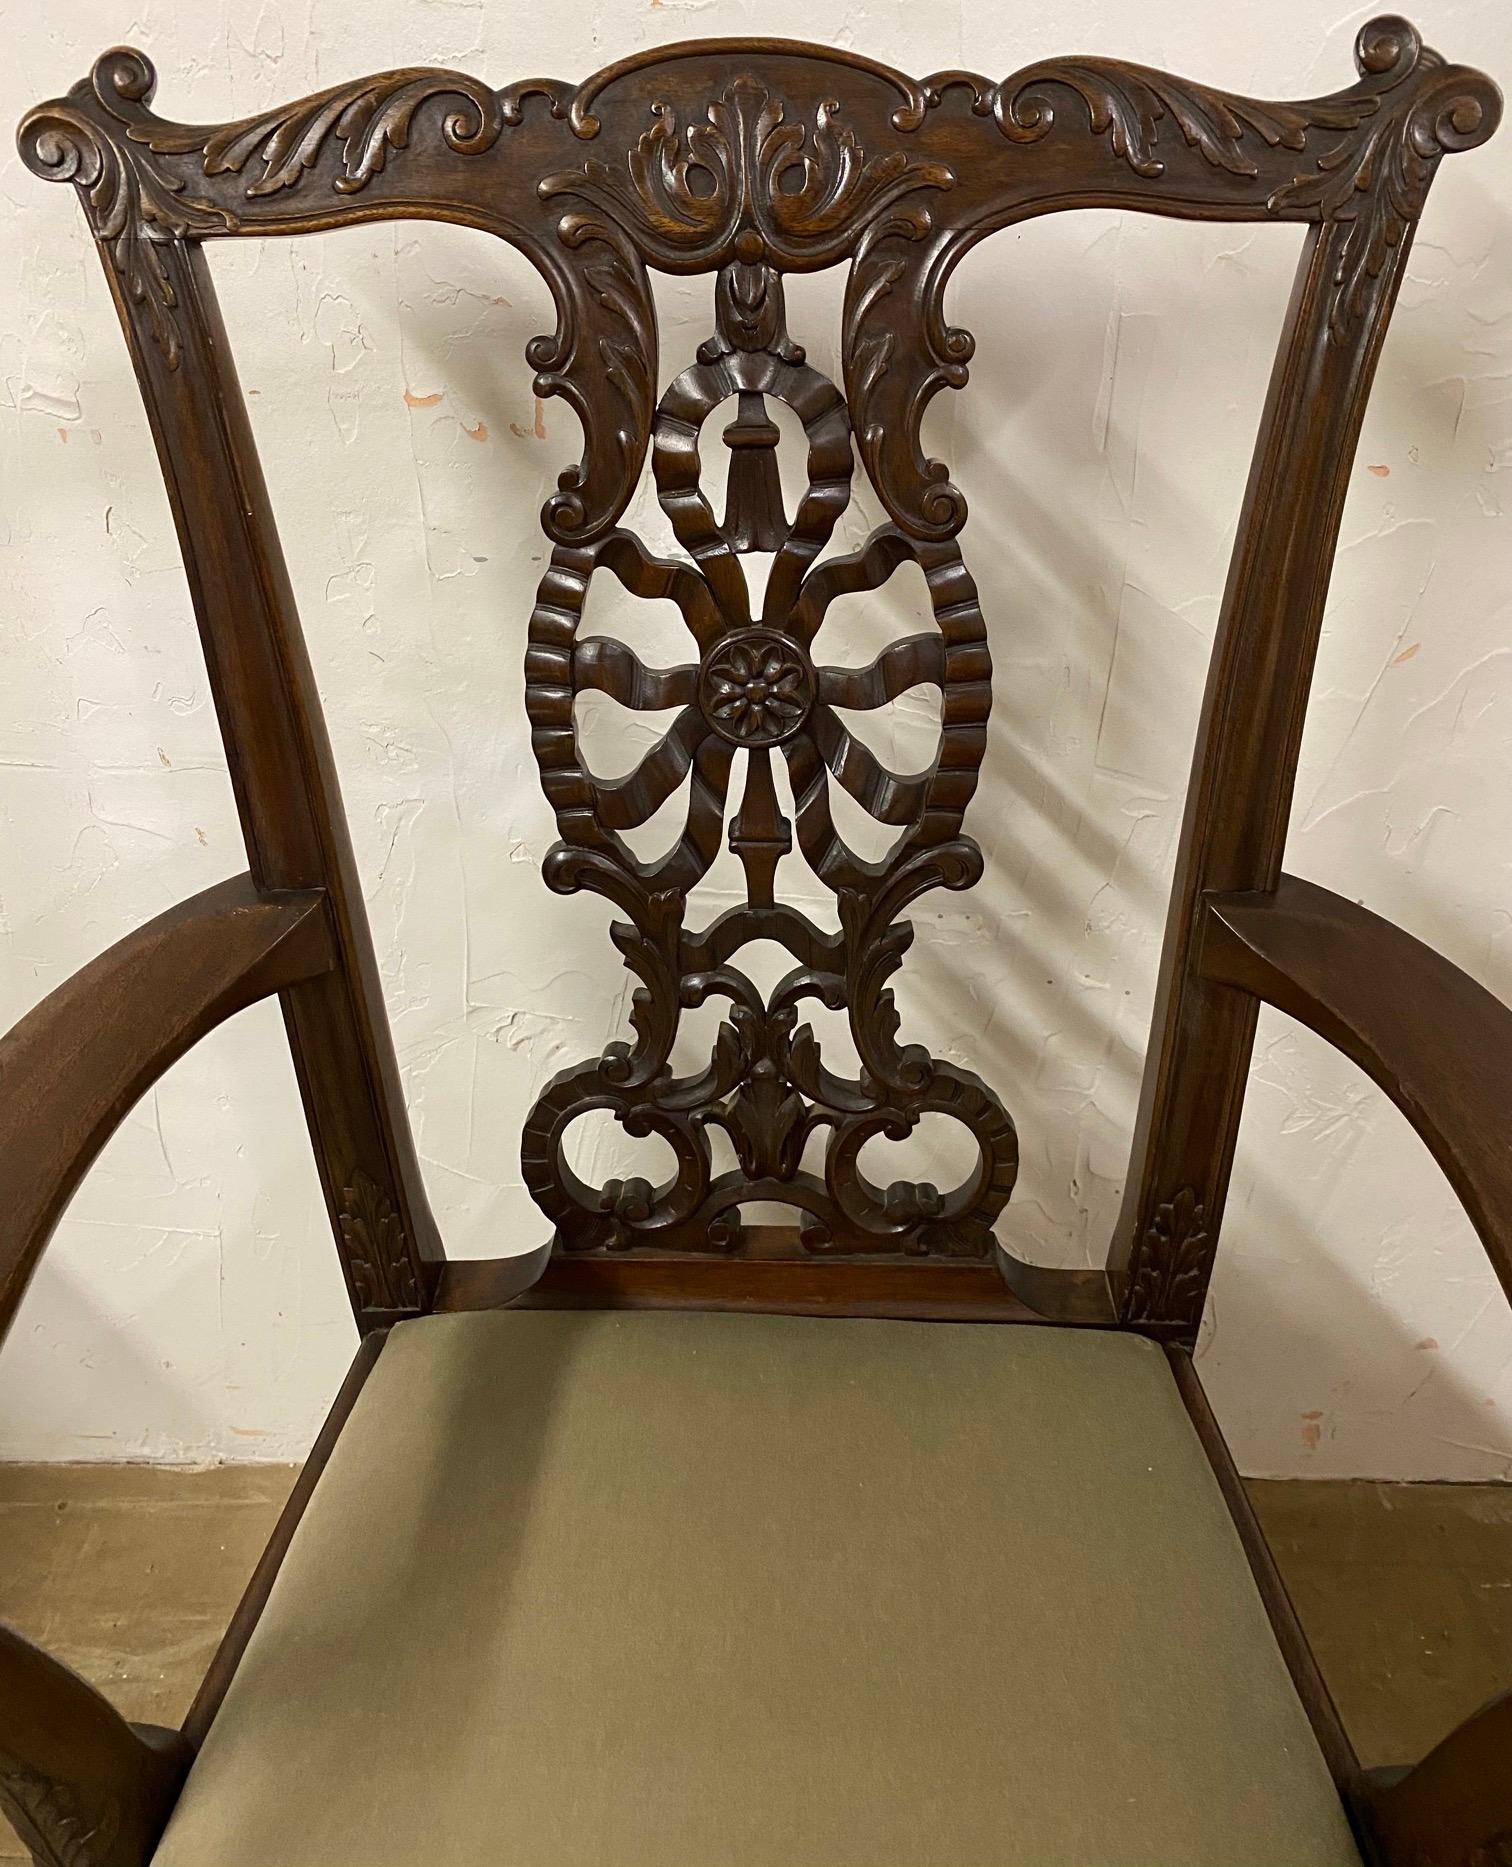 Ce fauteuil en acajou de style Chippendale, datant d'environ 1900, présente des motifs sculptés à la main, notamment un dossier combinant un motif de rubans, une rosette, une houppe et des feuilles. Les bras se terminent par des têtes d'aigle